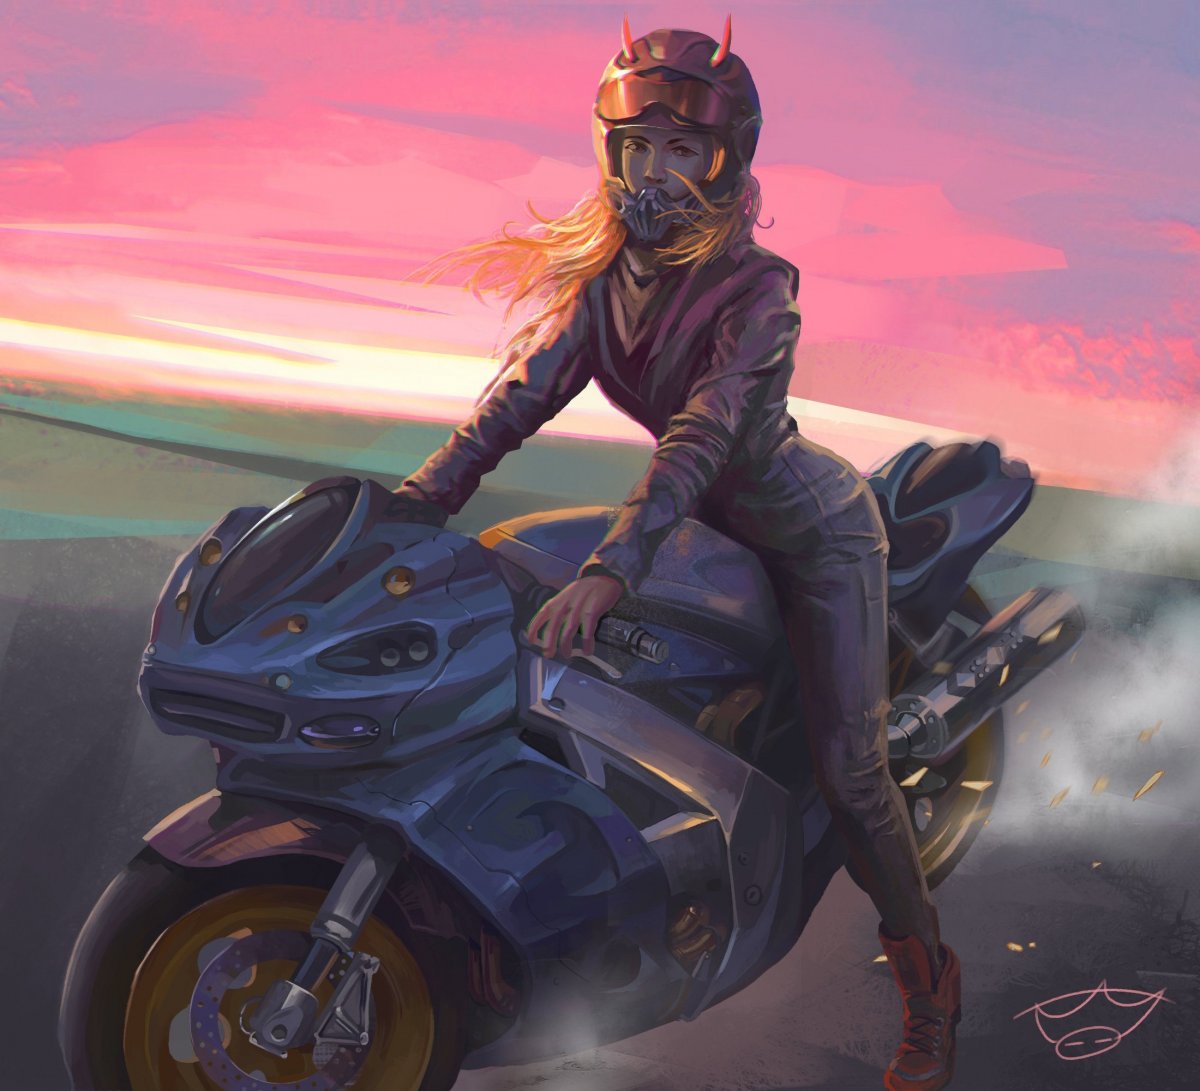 Cyberpunk 2077 - Yaiba Kusanagi Motorcycle 4k